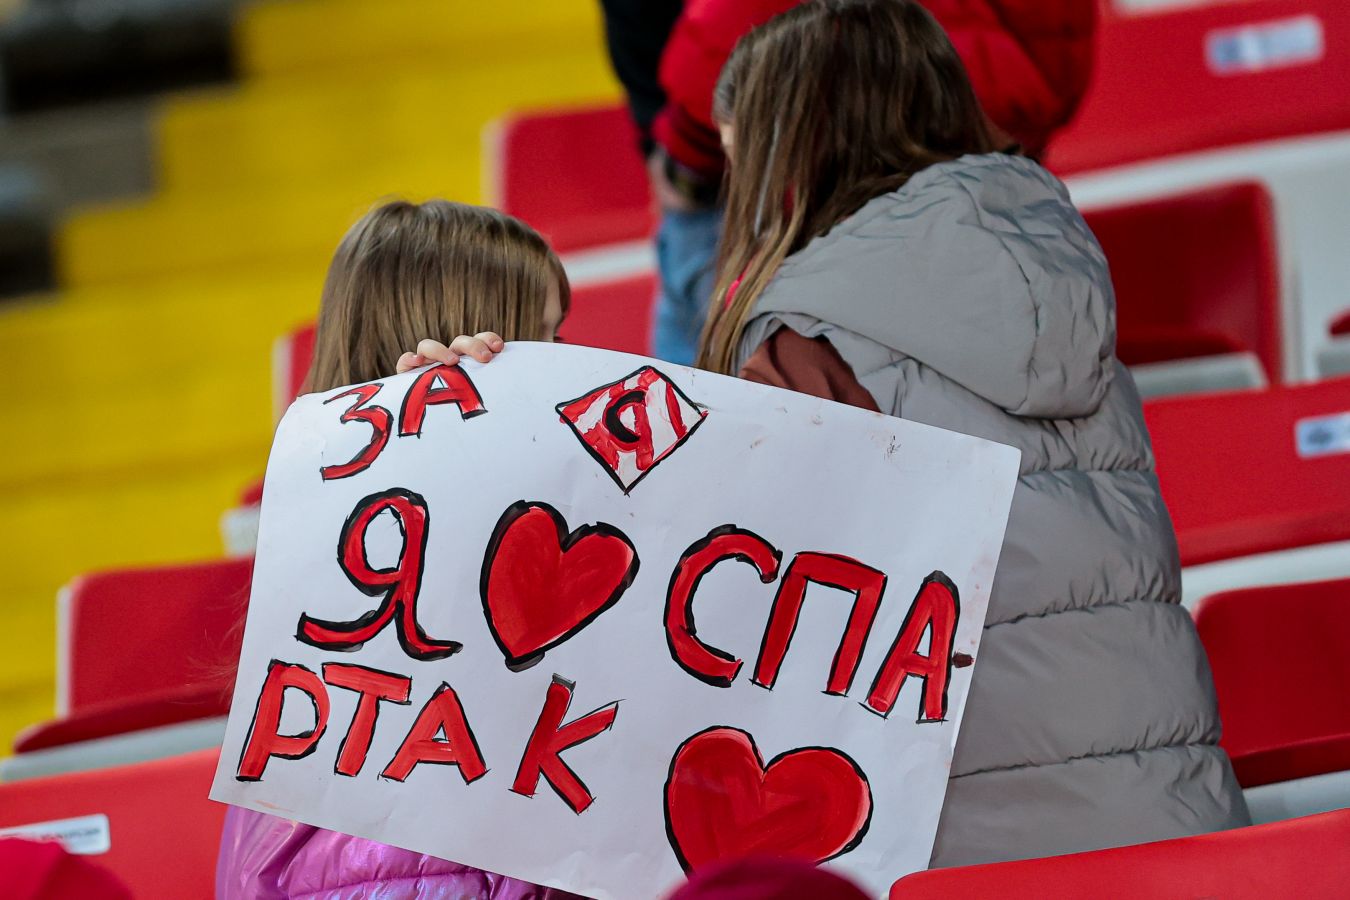 Матч Спартак  Динамо посетили 8985 зрителей  лучший показатель красно-белых с Fan ID